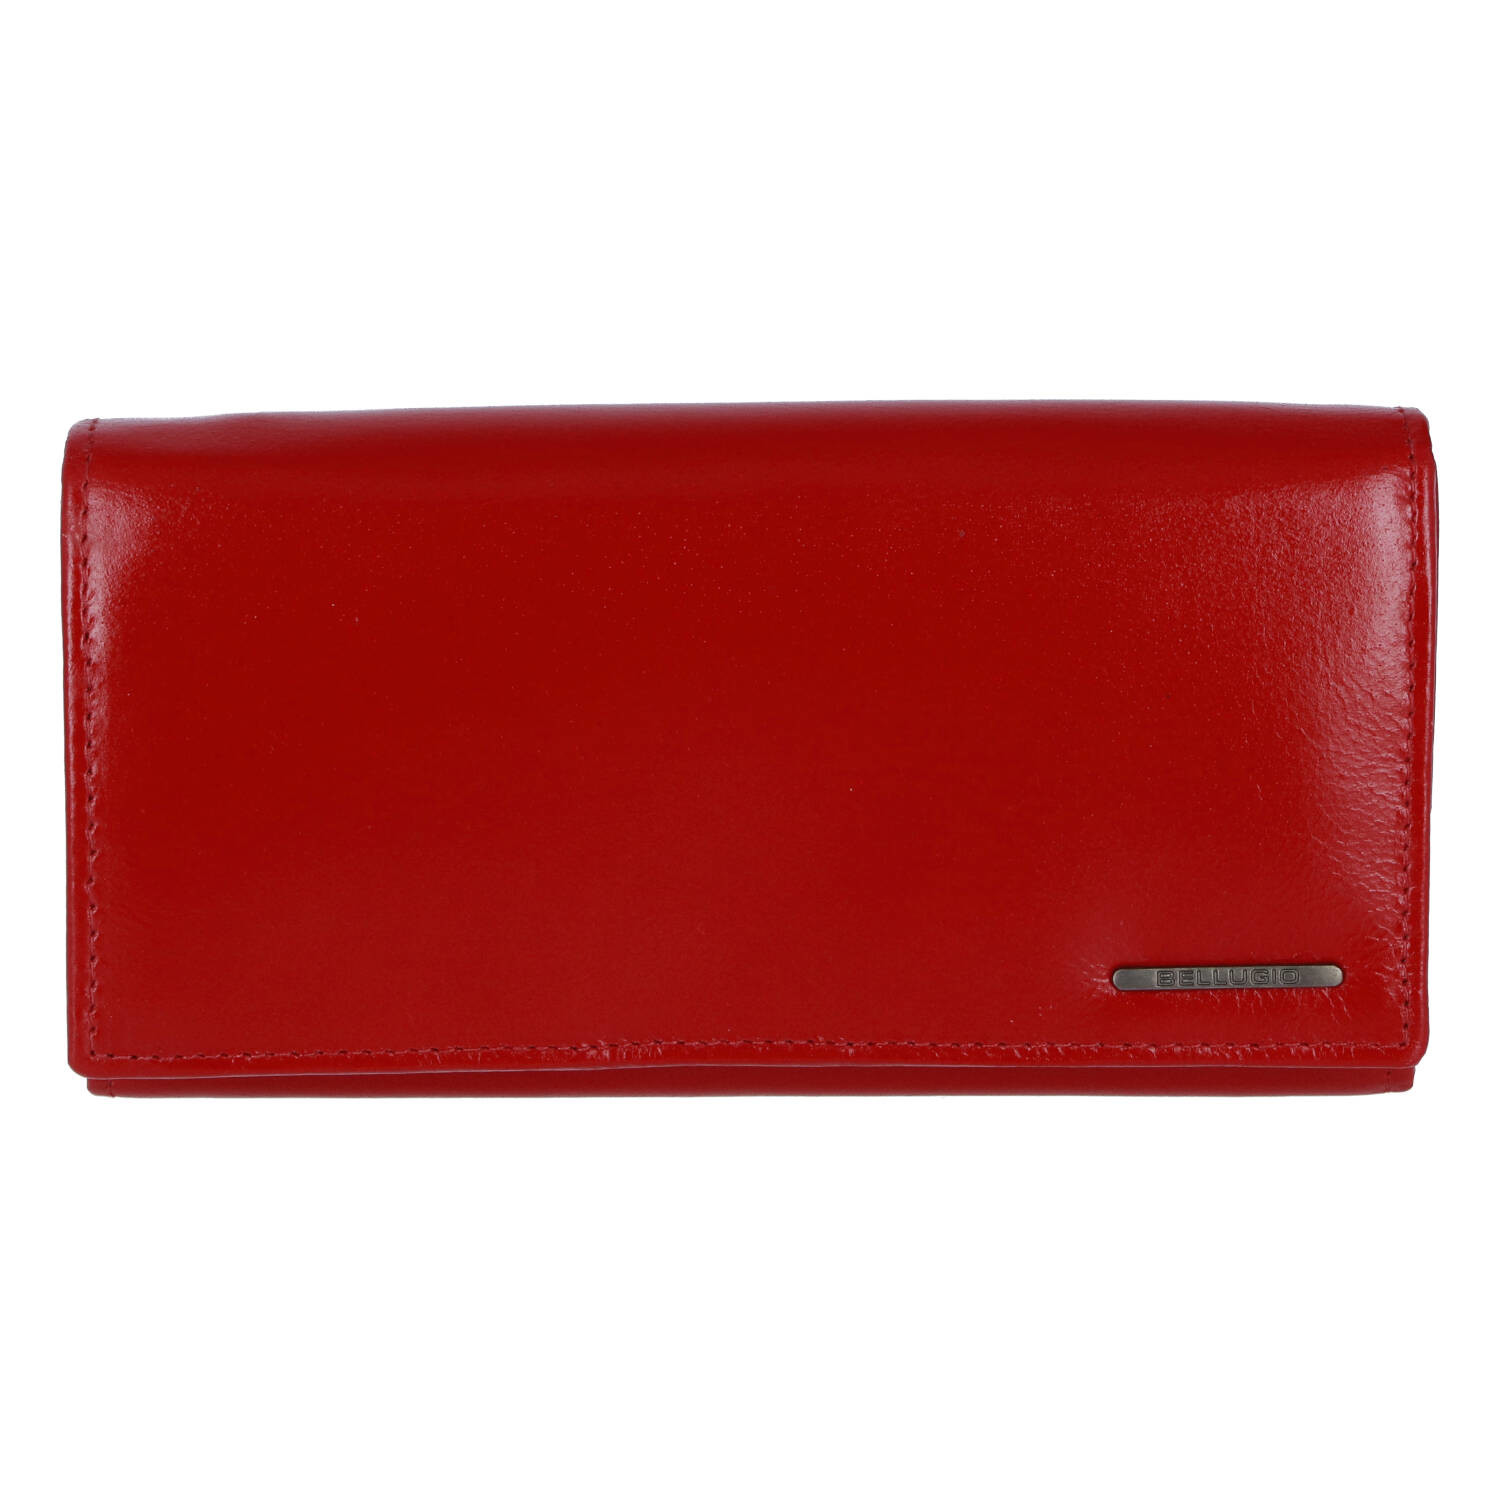 Dámská kožená peněženka Bellugio Bellinda, červená